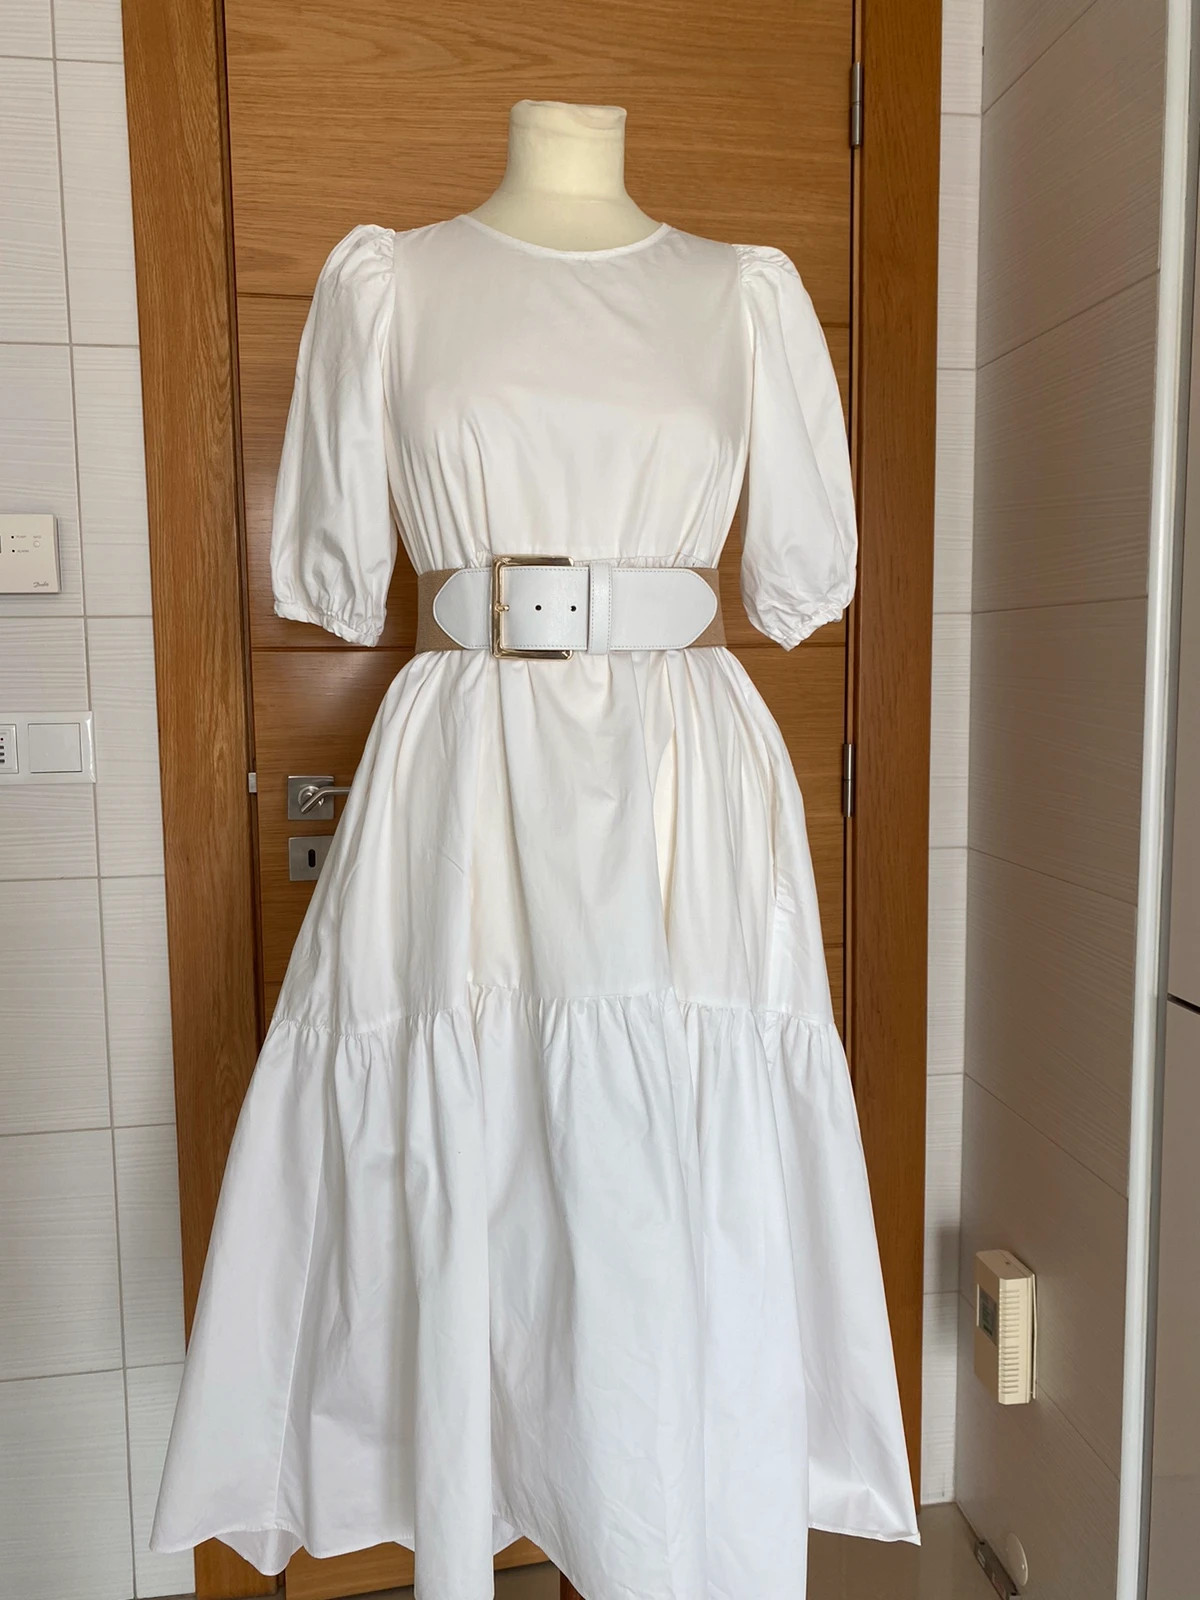 Vestido branco da Zara